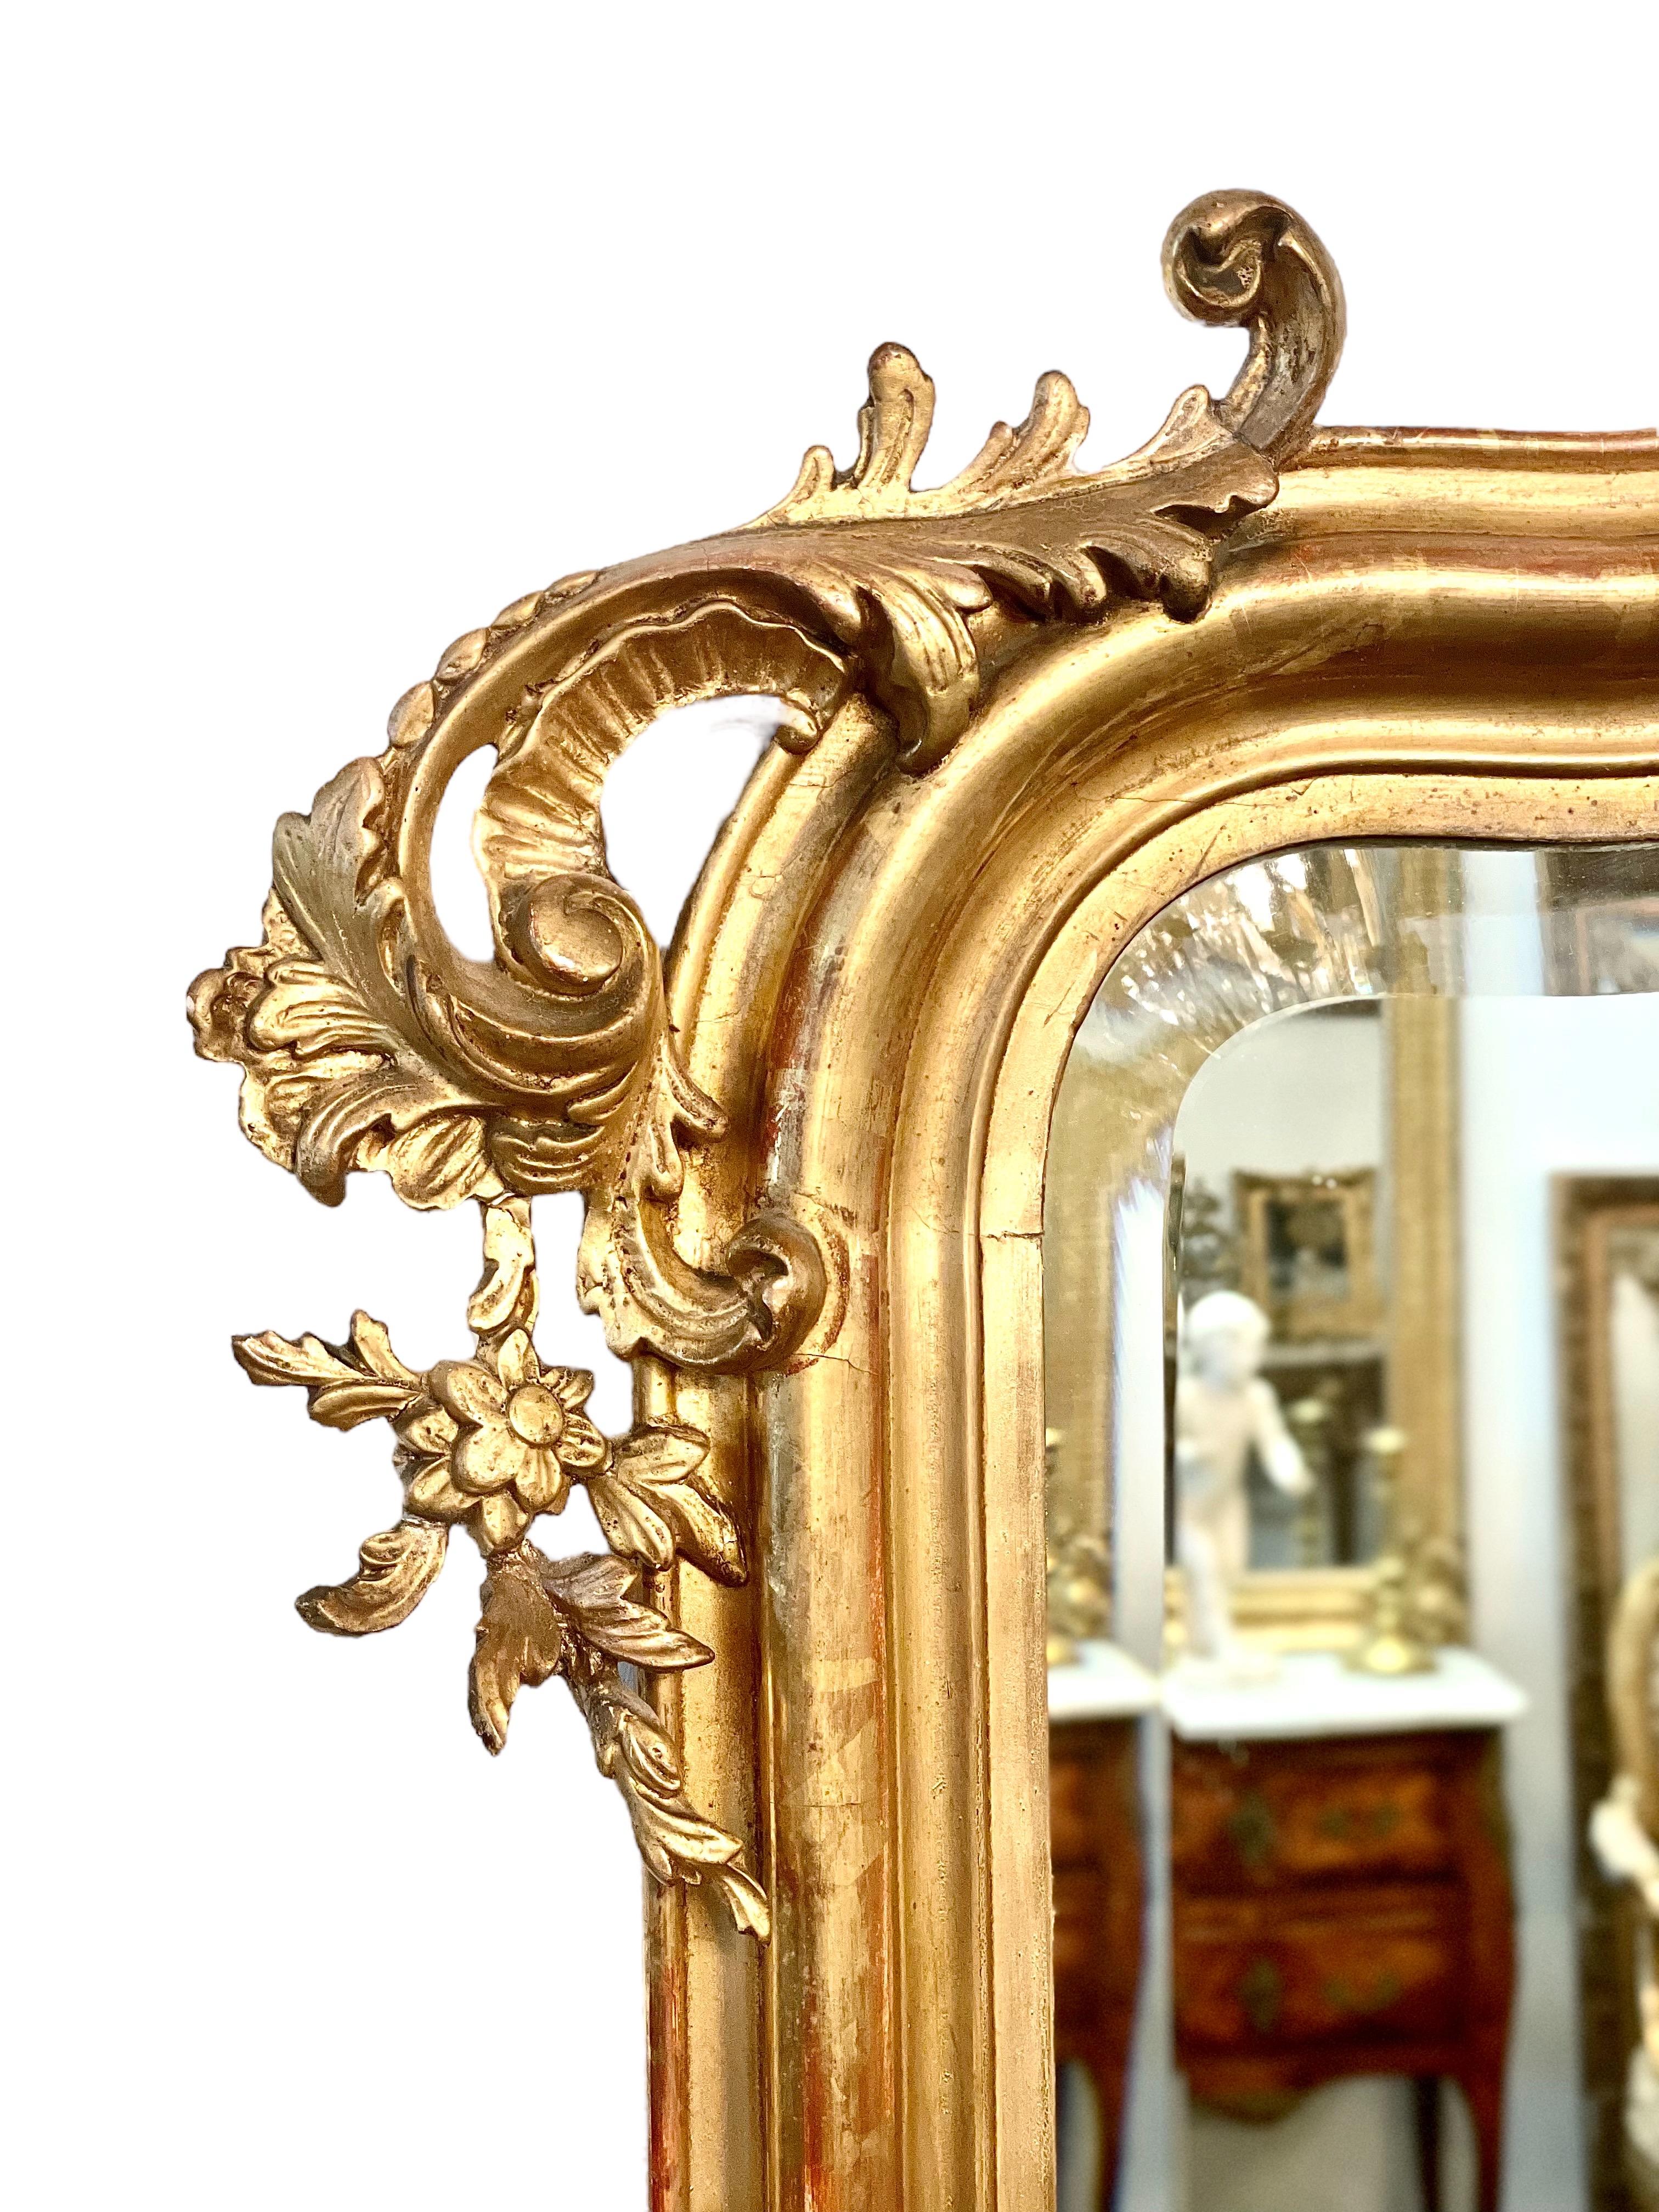 Ein absolut atemberaubender vergoldeter und geschnitzter Holzspiegel im Louis XV-Stil aus der zweiten Hälfte des 19. Jahrhunderts mit einem übergroßen Kokardenwappen, flankiert von phantasievollen Blättern und Blumen. Zusätzliche Verzierungen an den